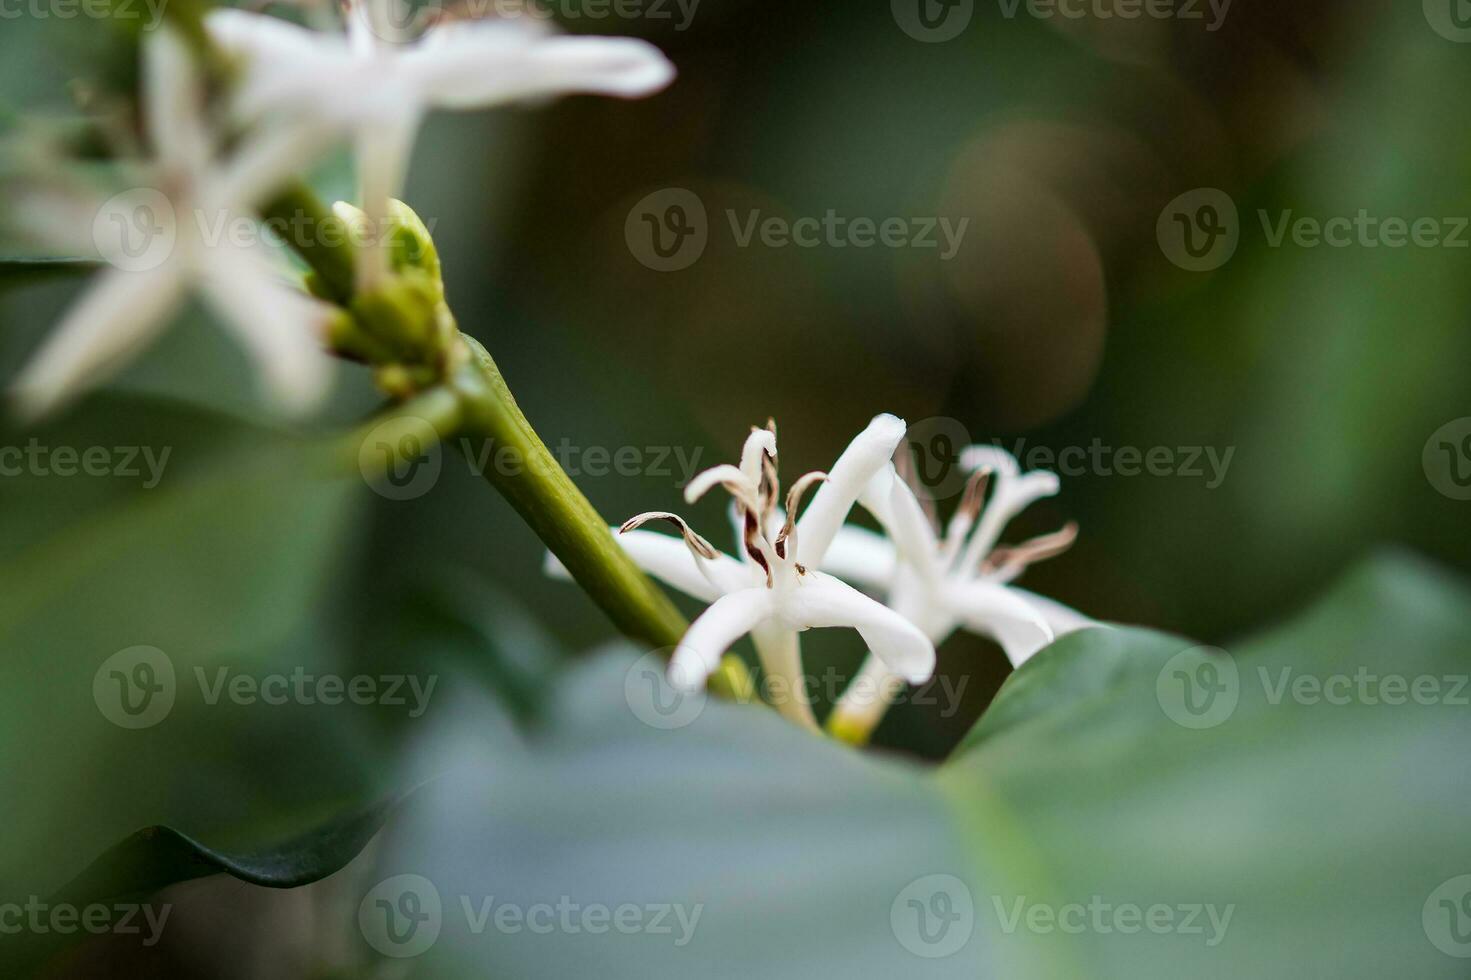 flor branca na árvore de café close-up foto